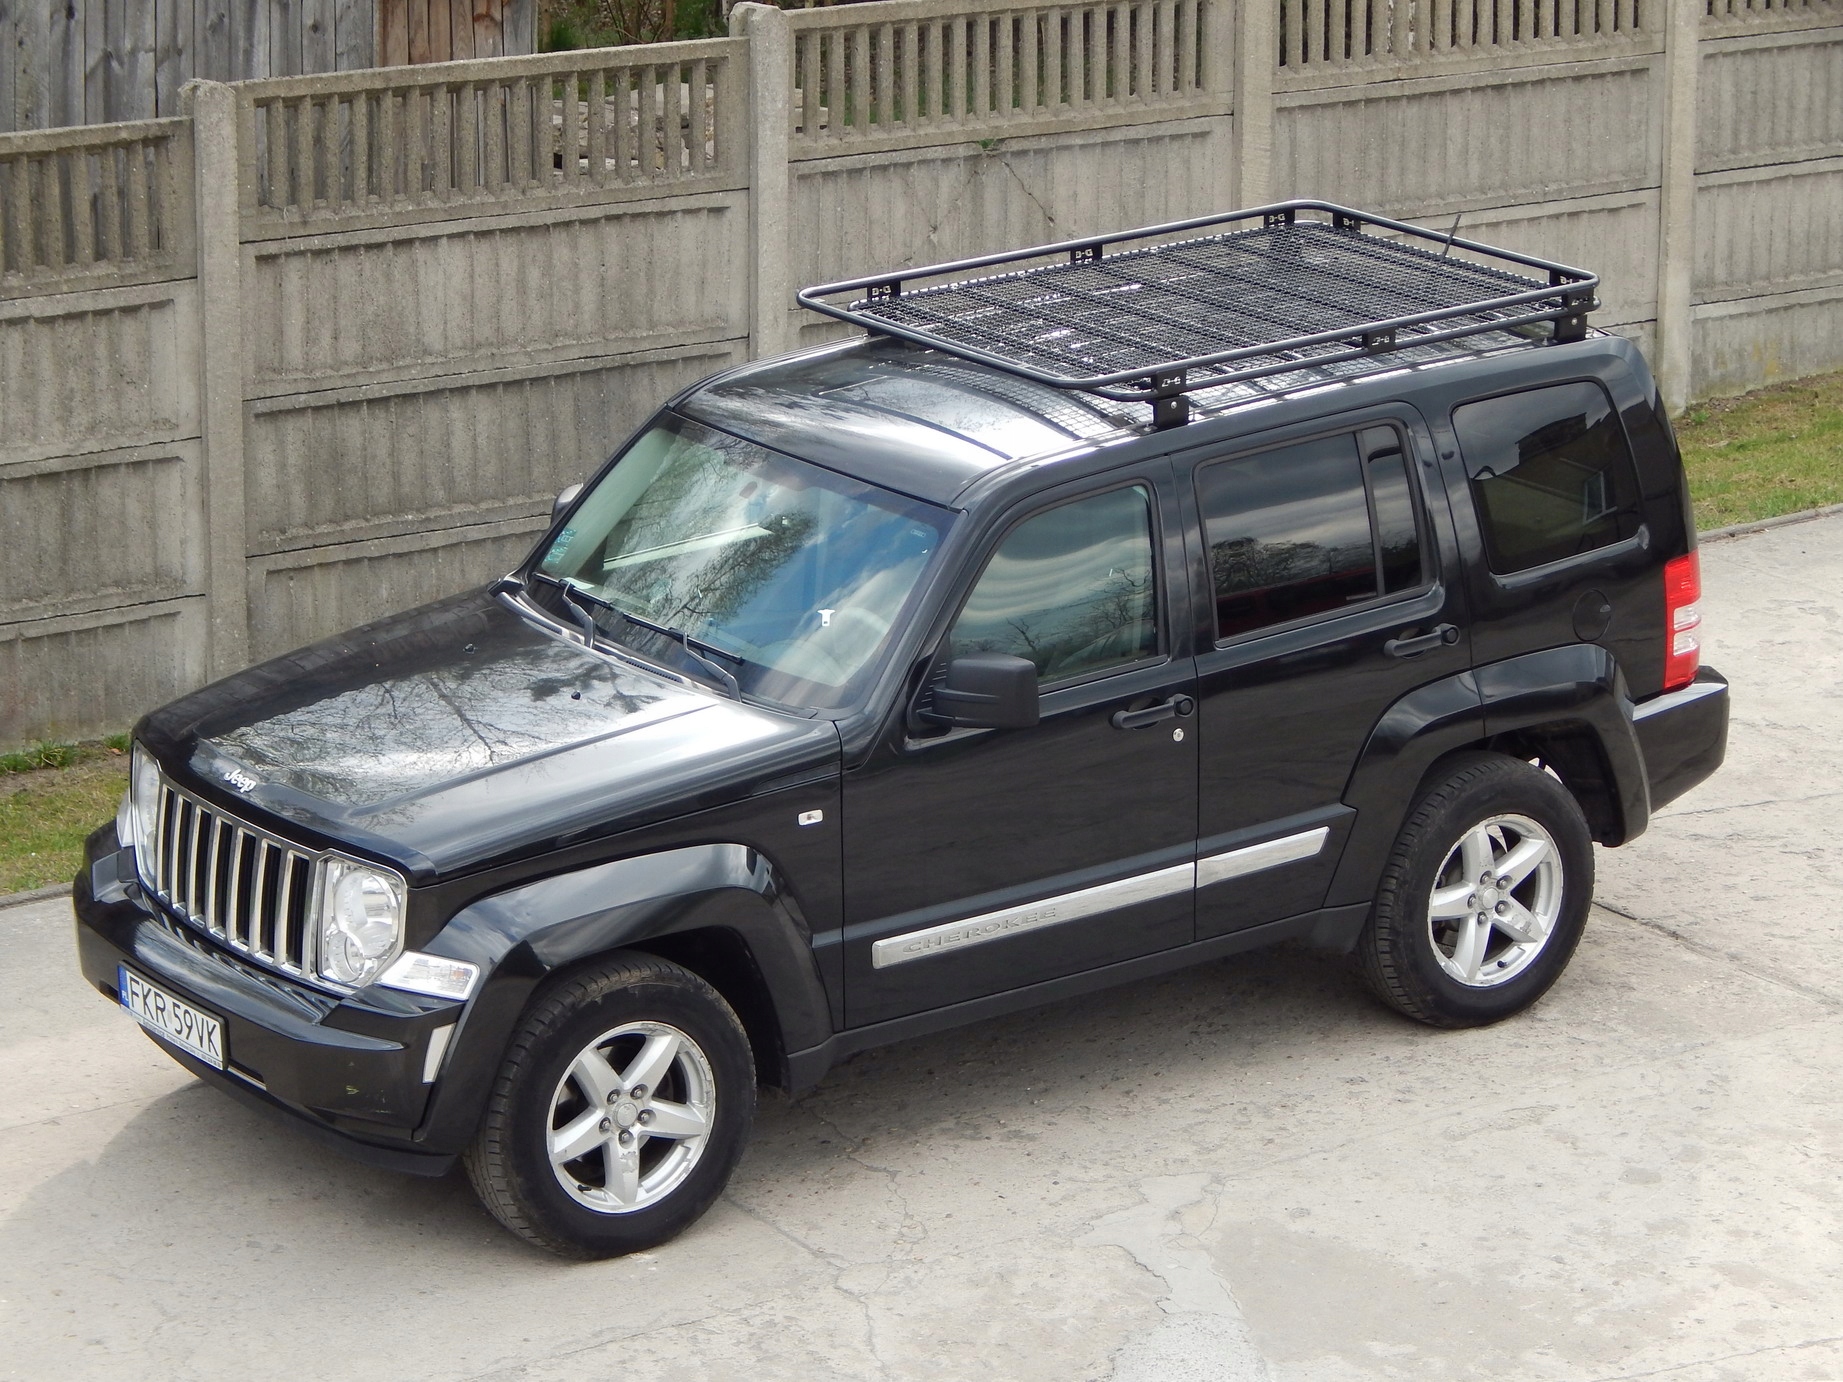 Bagażnik Dachowy Jeep Cherokee Liberty Kk Z Siatką Za 2250 Zł Z Częstochowa - Allegro.pl - (7982592083)